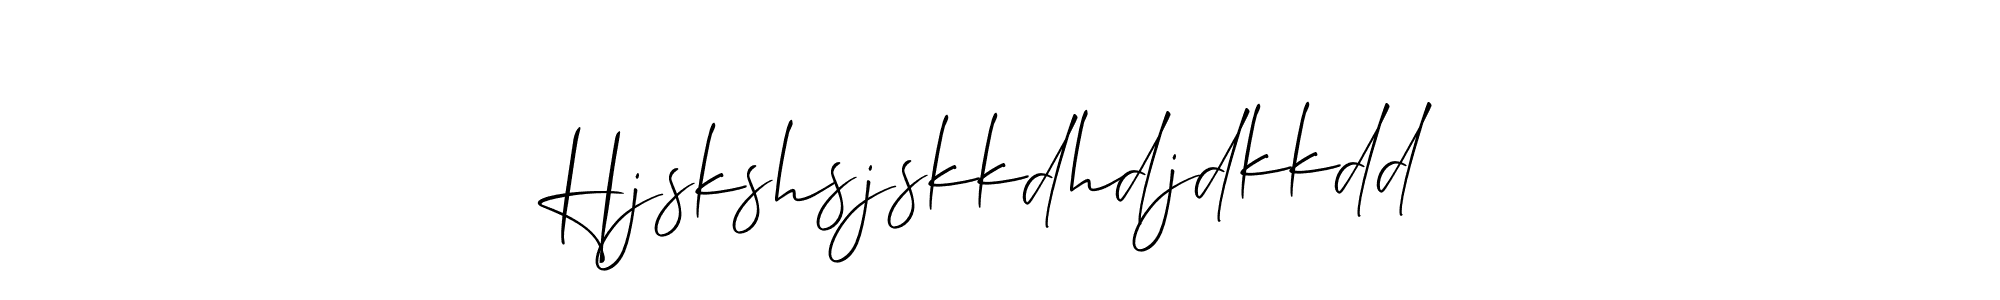 Best and Professional Signature Style for Hjskshsjskkdhdjdkkdd. Allison_Script Best Signature Style Collection. Hjskshsjskkdhdjdkkdd signature style 2 images and pictures png